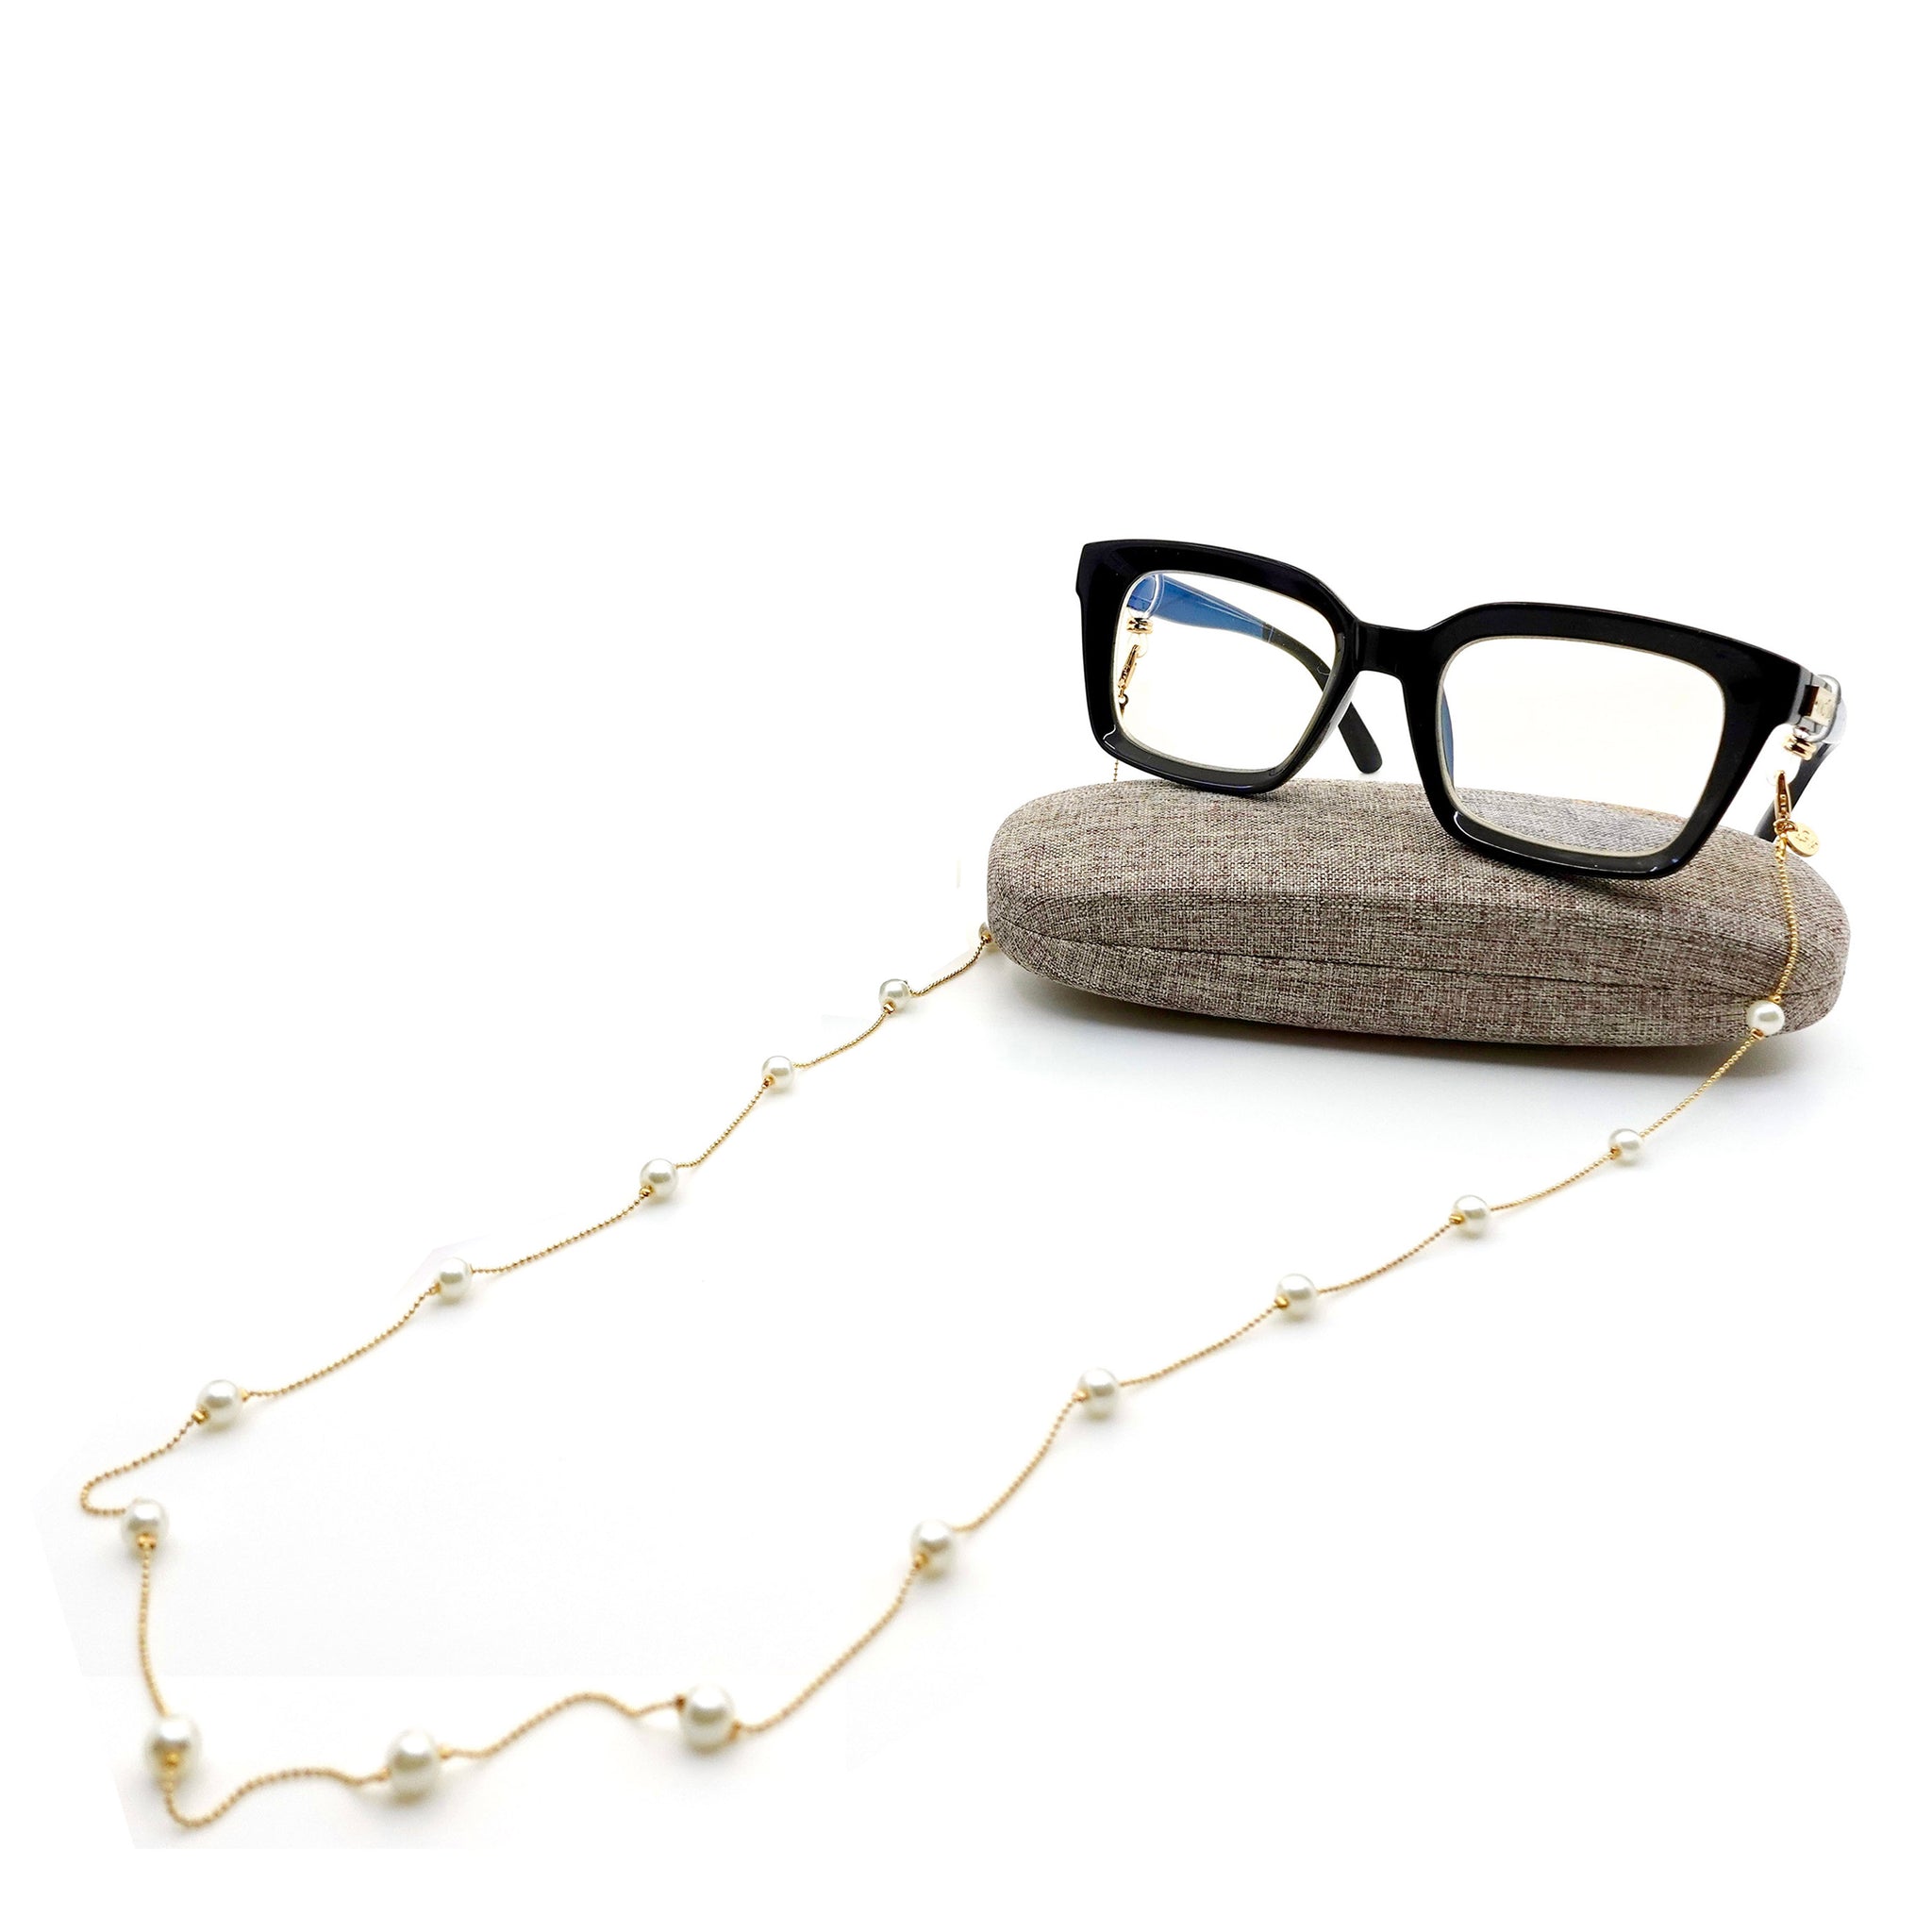 The Sophia Pearl Glasses Chain